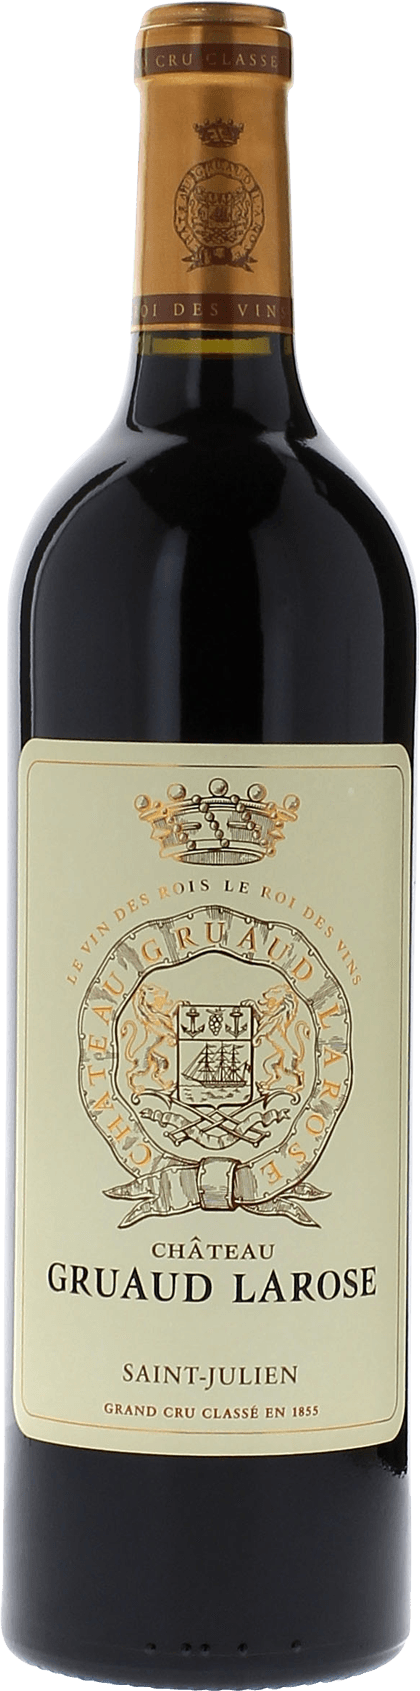 Gruaud larose 1996 2me Grand cru class Saint-Julien, Bordeaux rouge